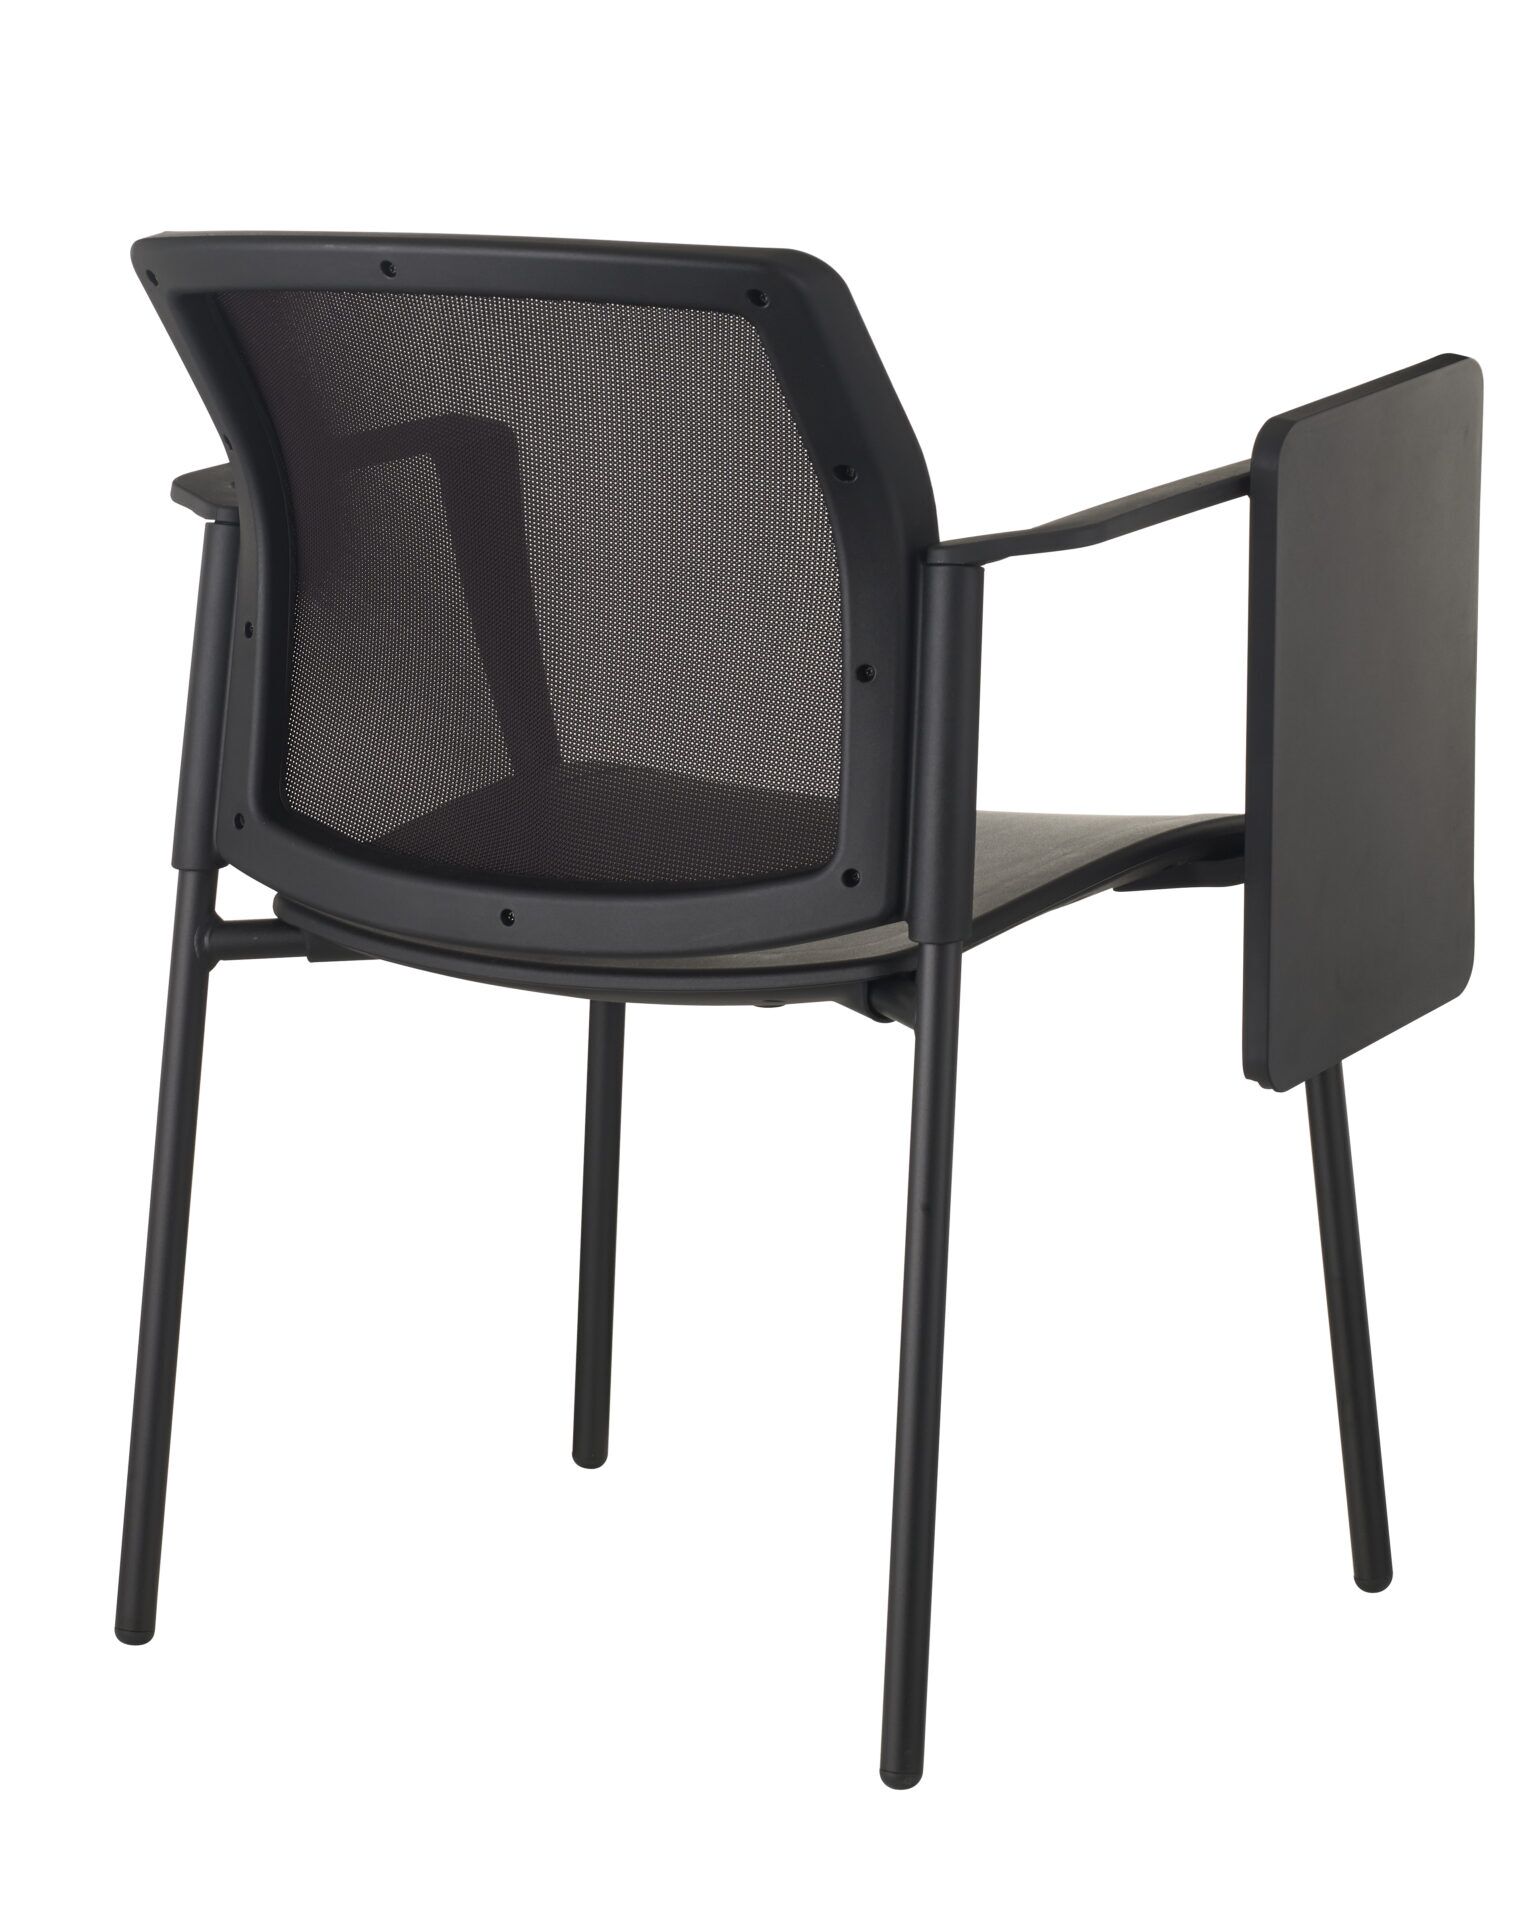 Czarne krzesło biurowe z podkładką po skosie od tyłu 4job BGroup